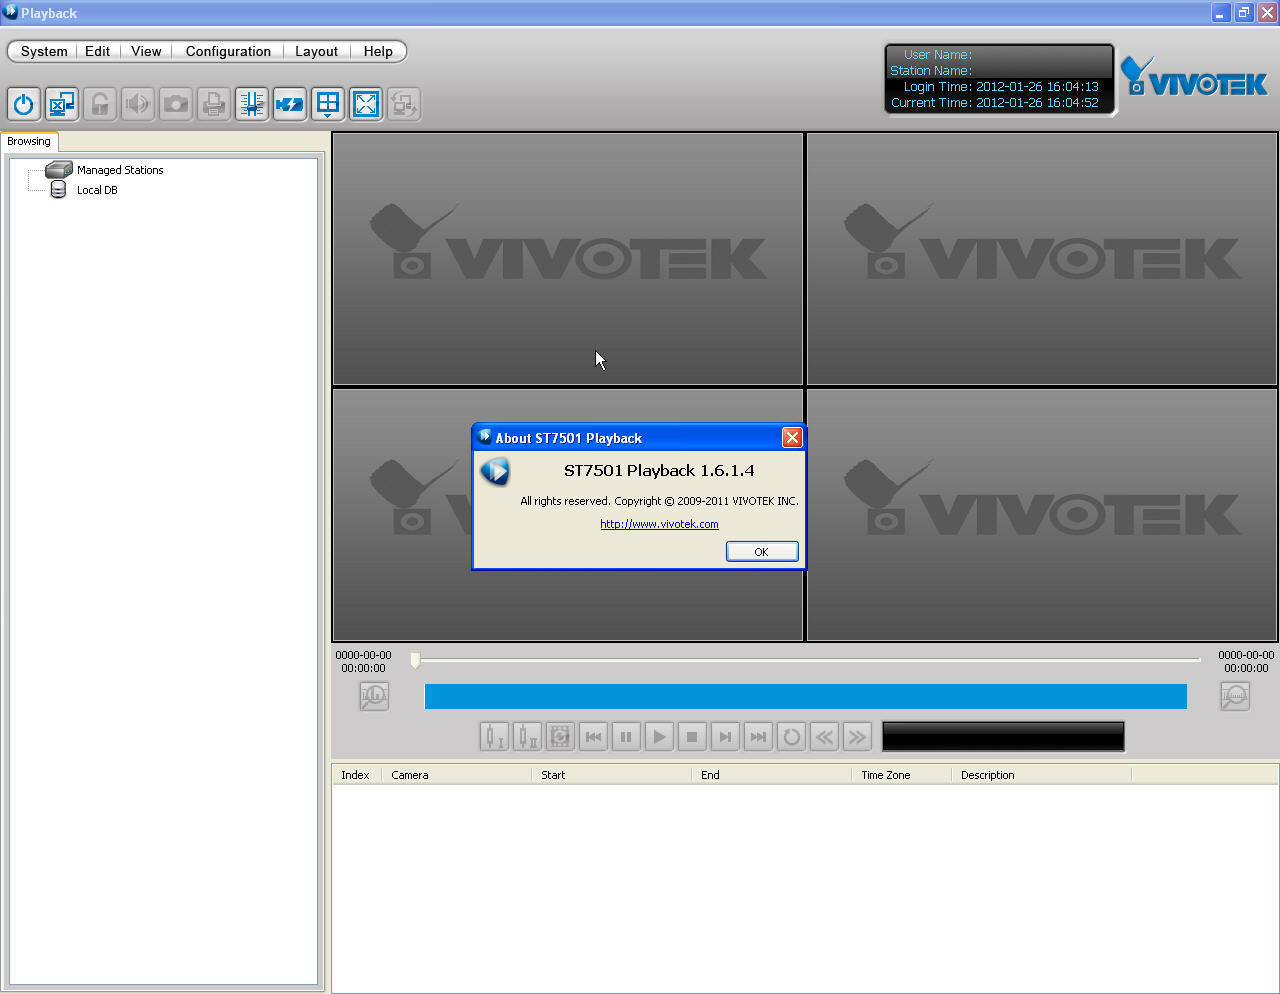 vivotek client for mac